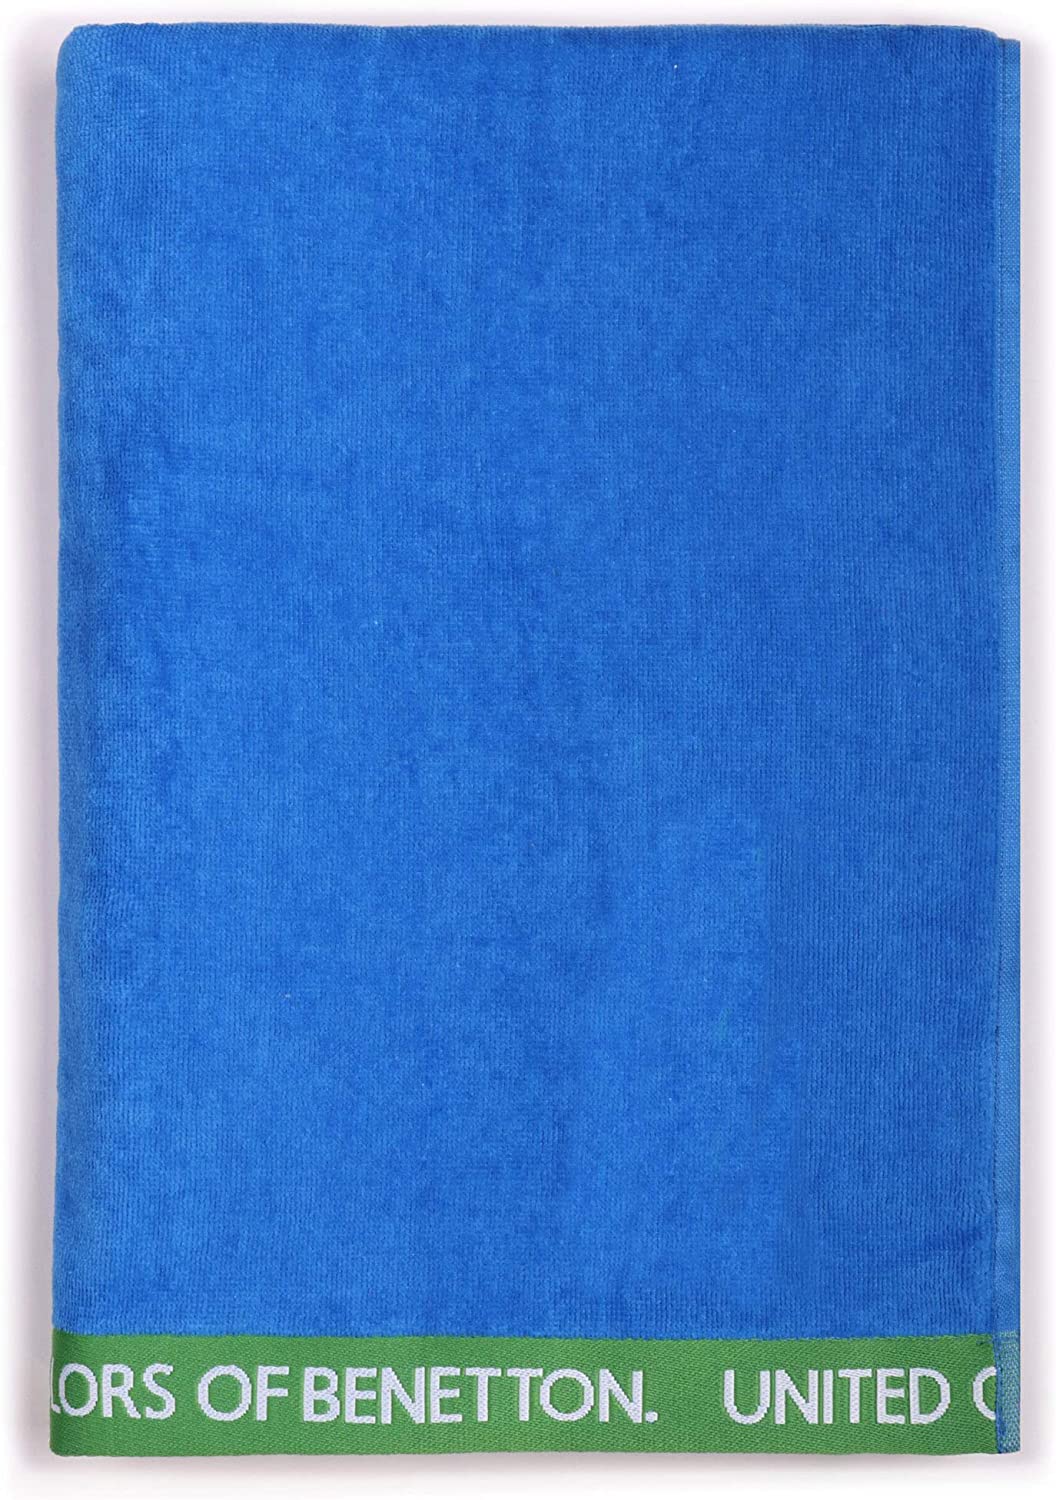 UNITED COLORS OF BENETTON.- Serviette de Plage 90x160cm 380g Velour 100% Coton Bleu Casa Benetton, 90x160